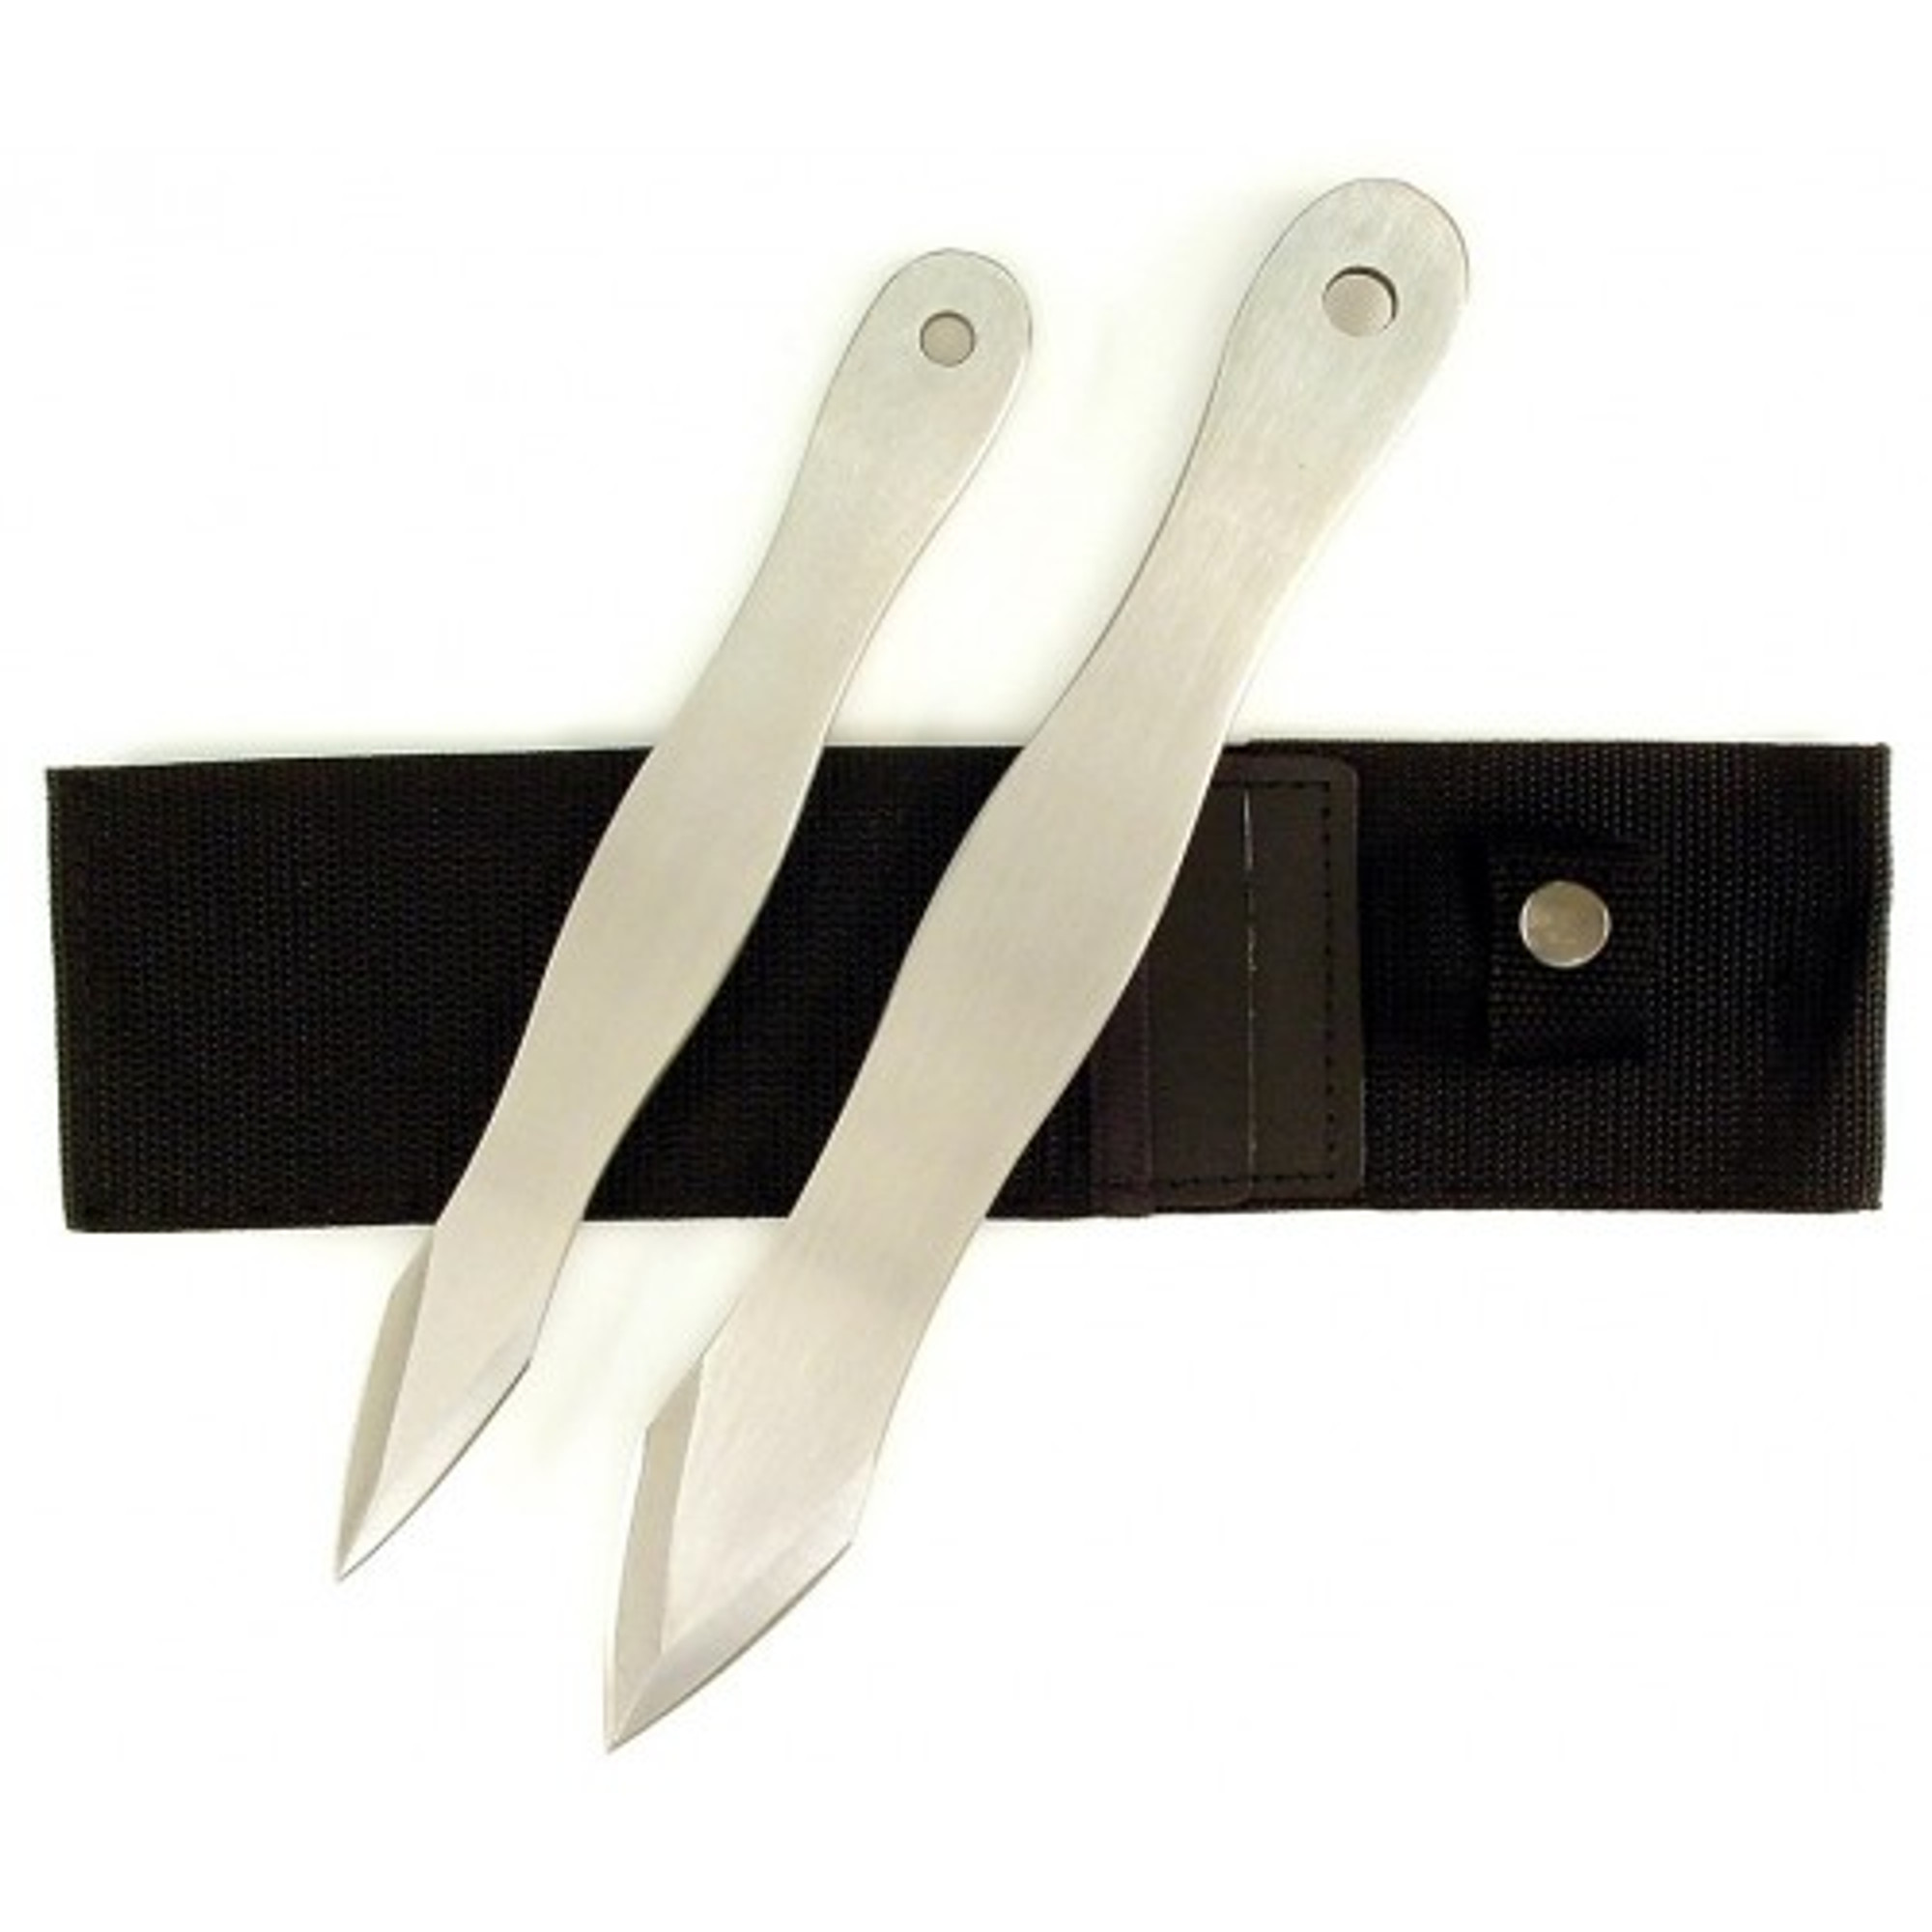 RUKO K3420, 420J2, Set of 2 - 9-3/4" & 8-1/4" Throwing Knives